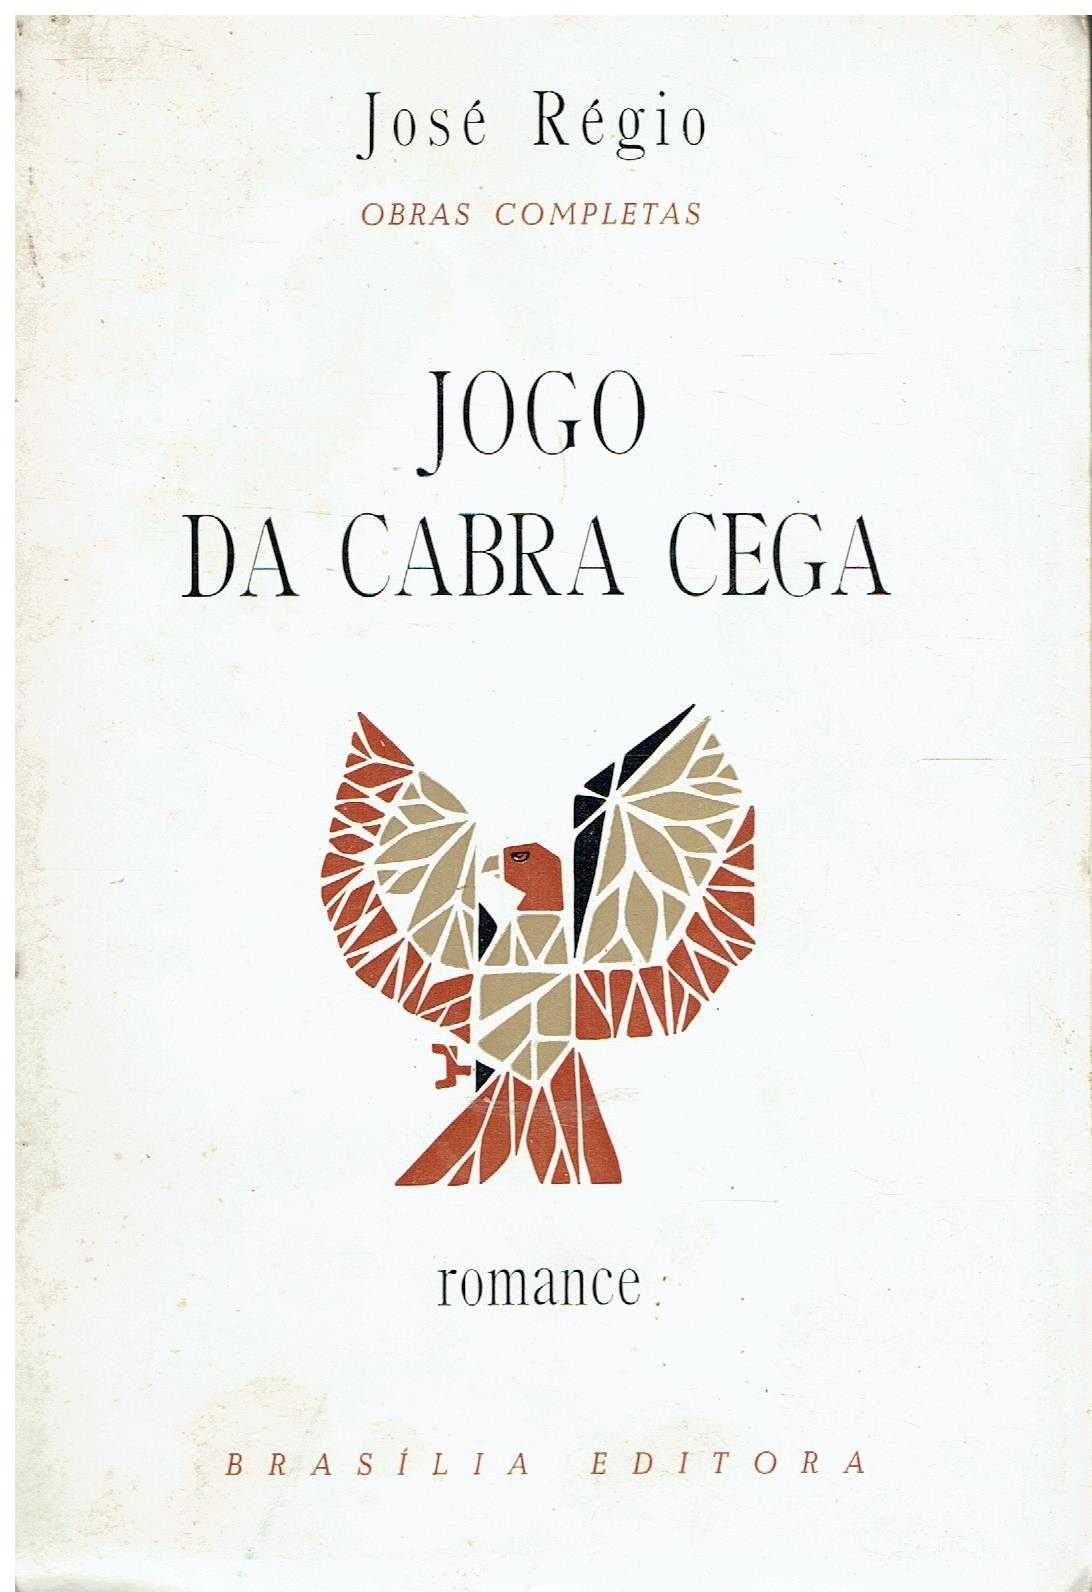 6860 Obras Completas de José Régio Brasília Editora